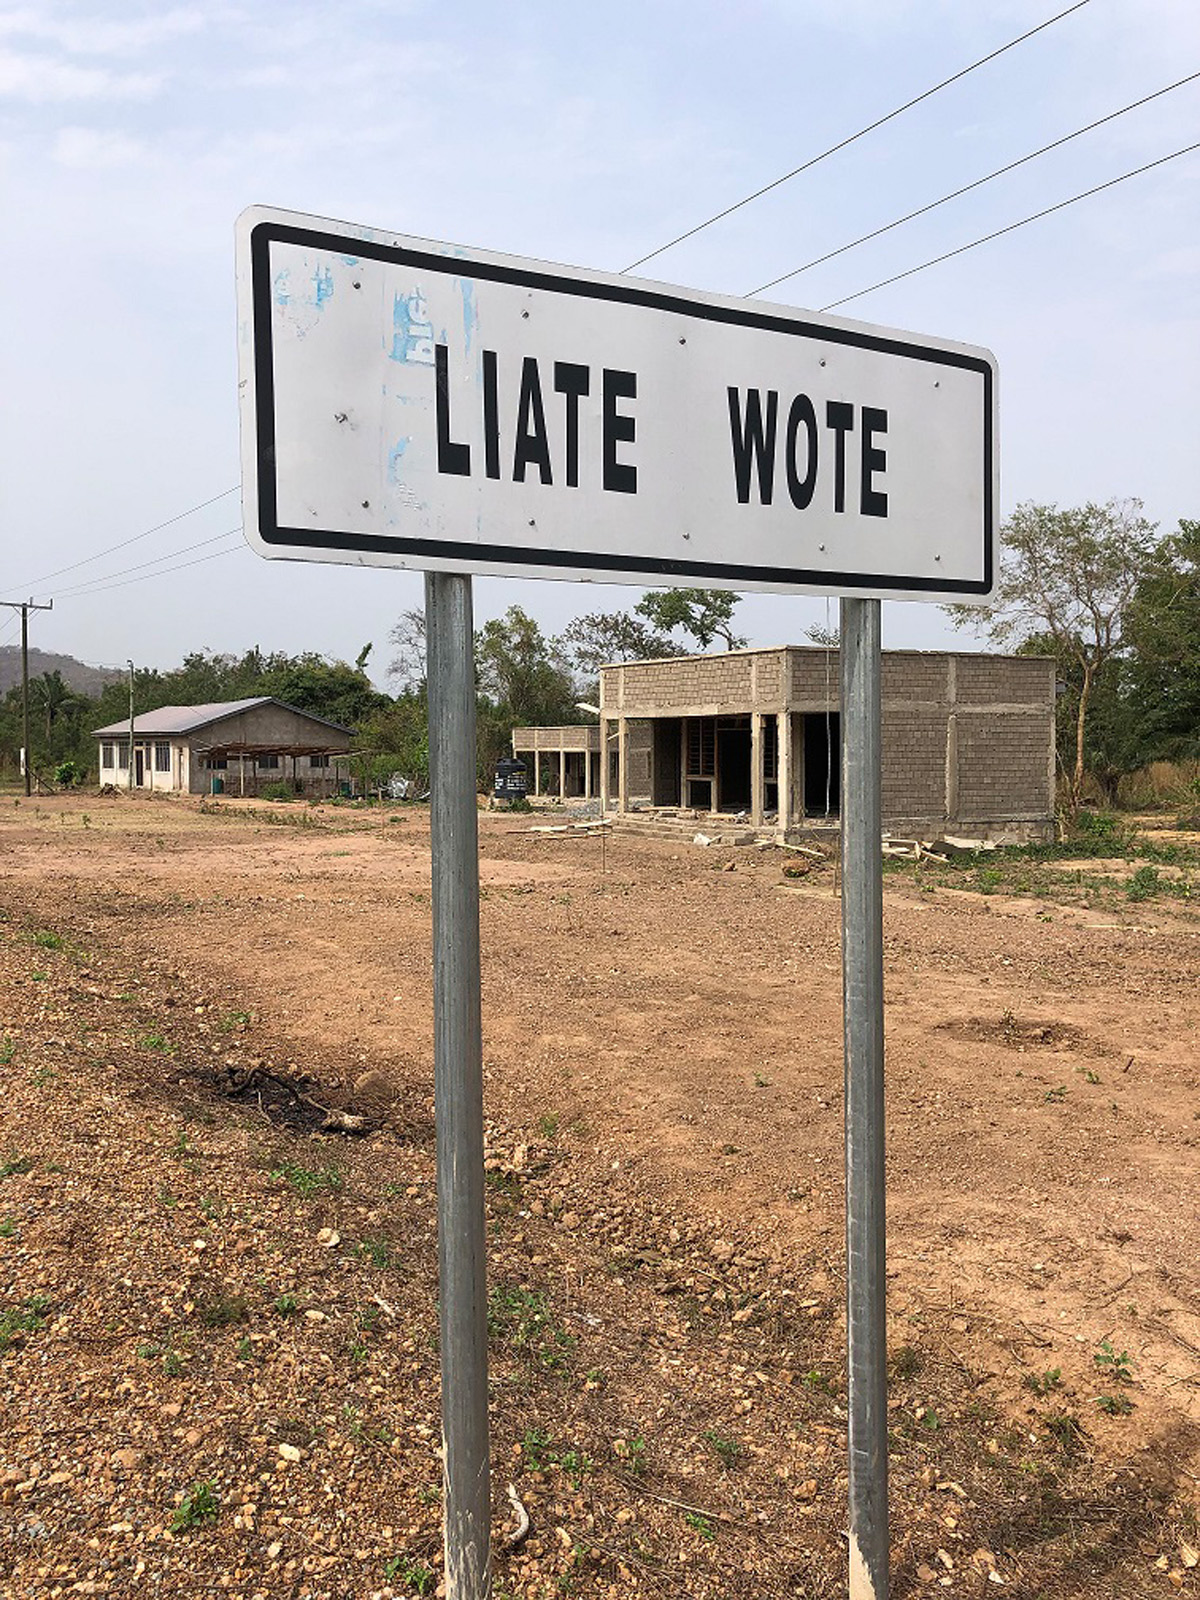 The Green Hub in Liate Wote, Ghana